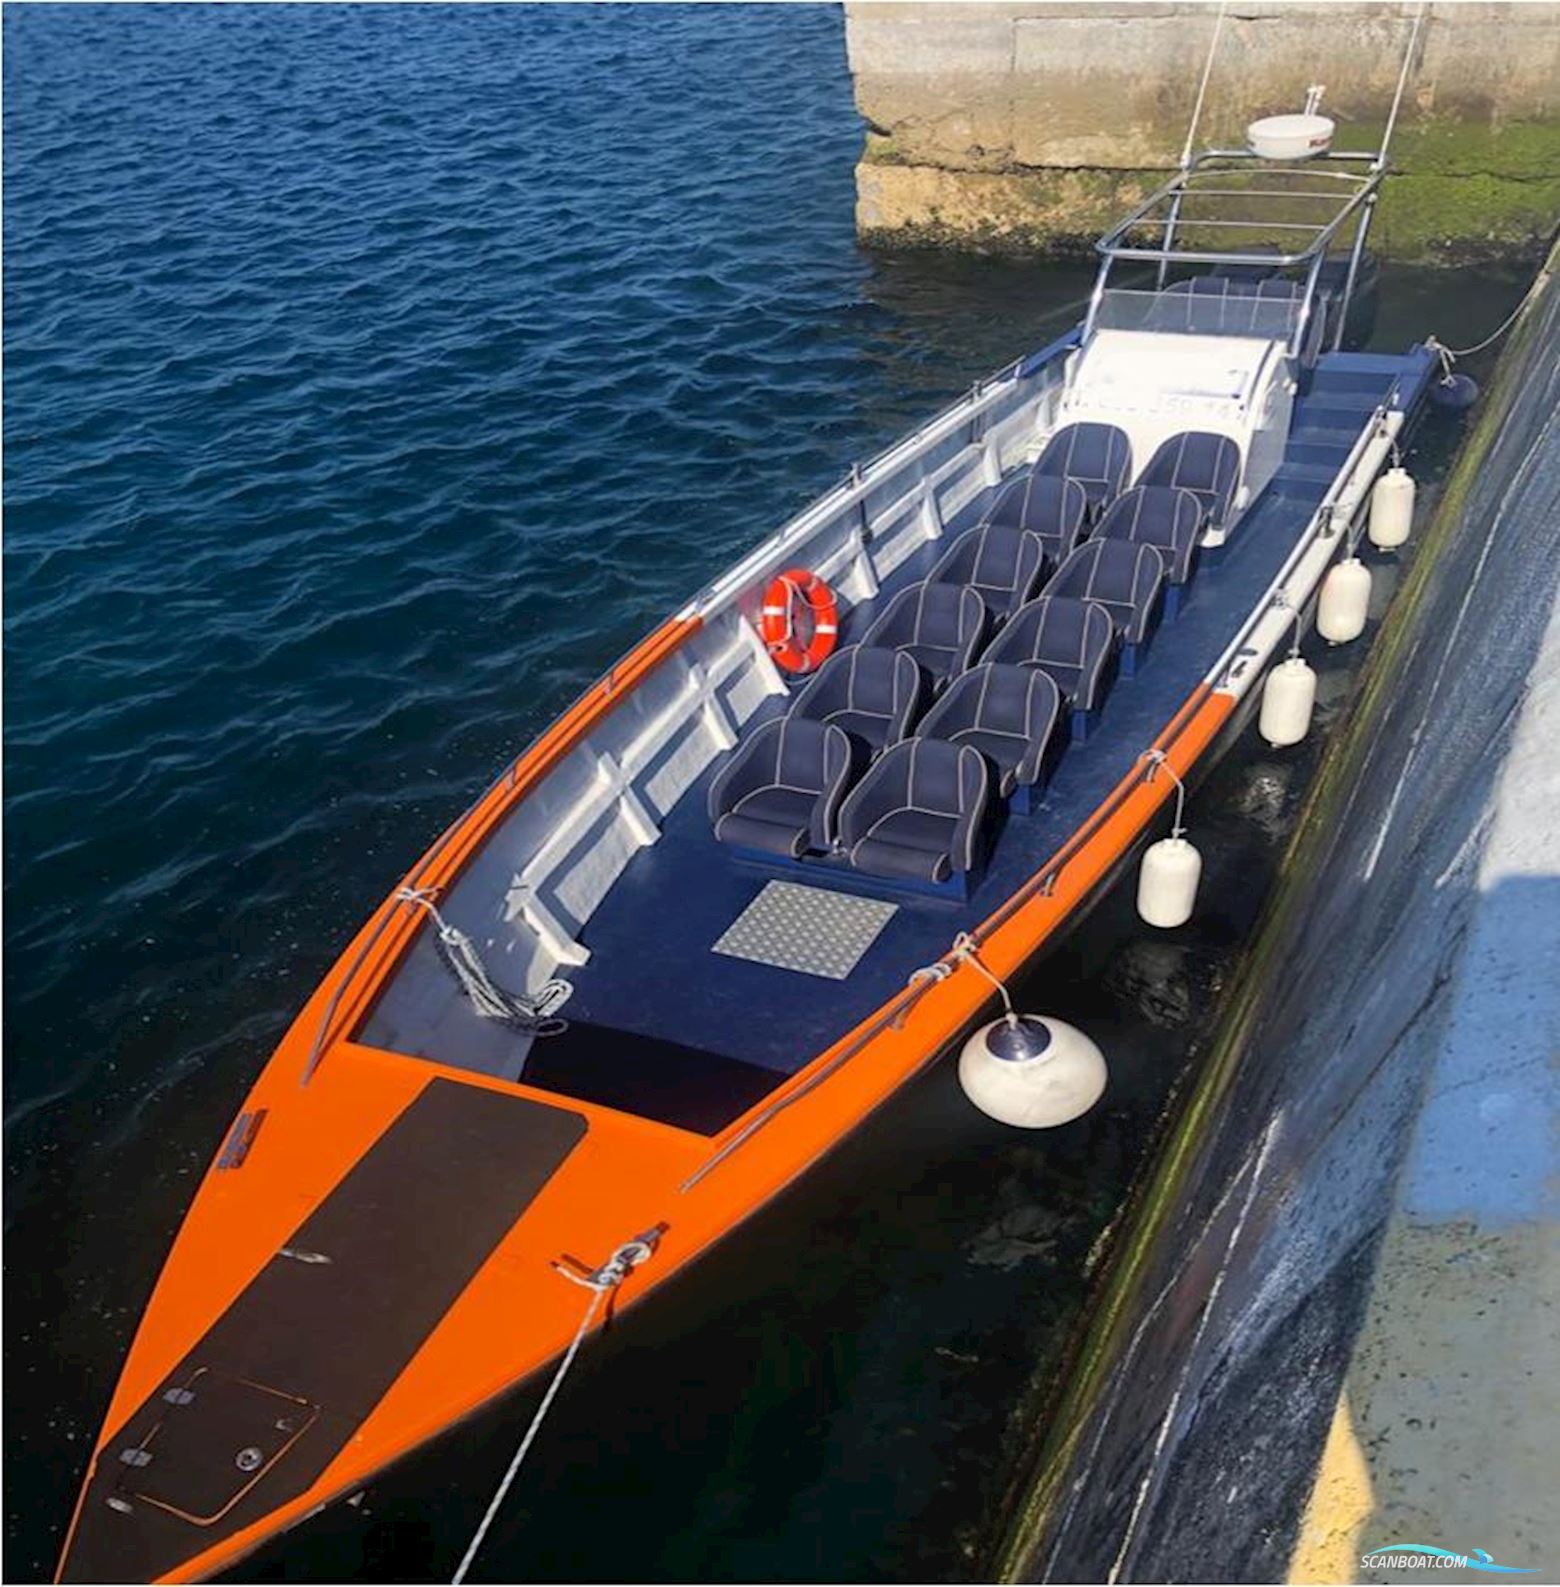 Custom Built Polinautica Speed Motor Boat 1200 Scx Motorbåt 2013, med Suzuki motor, Spanien